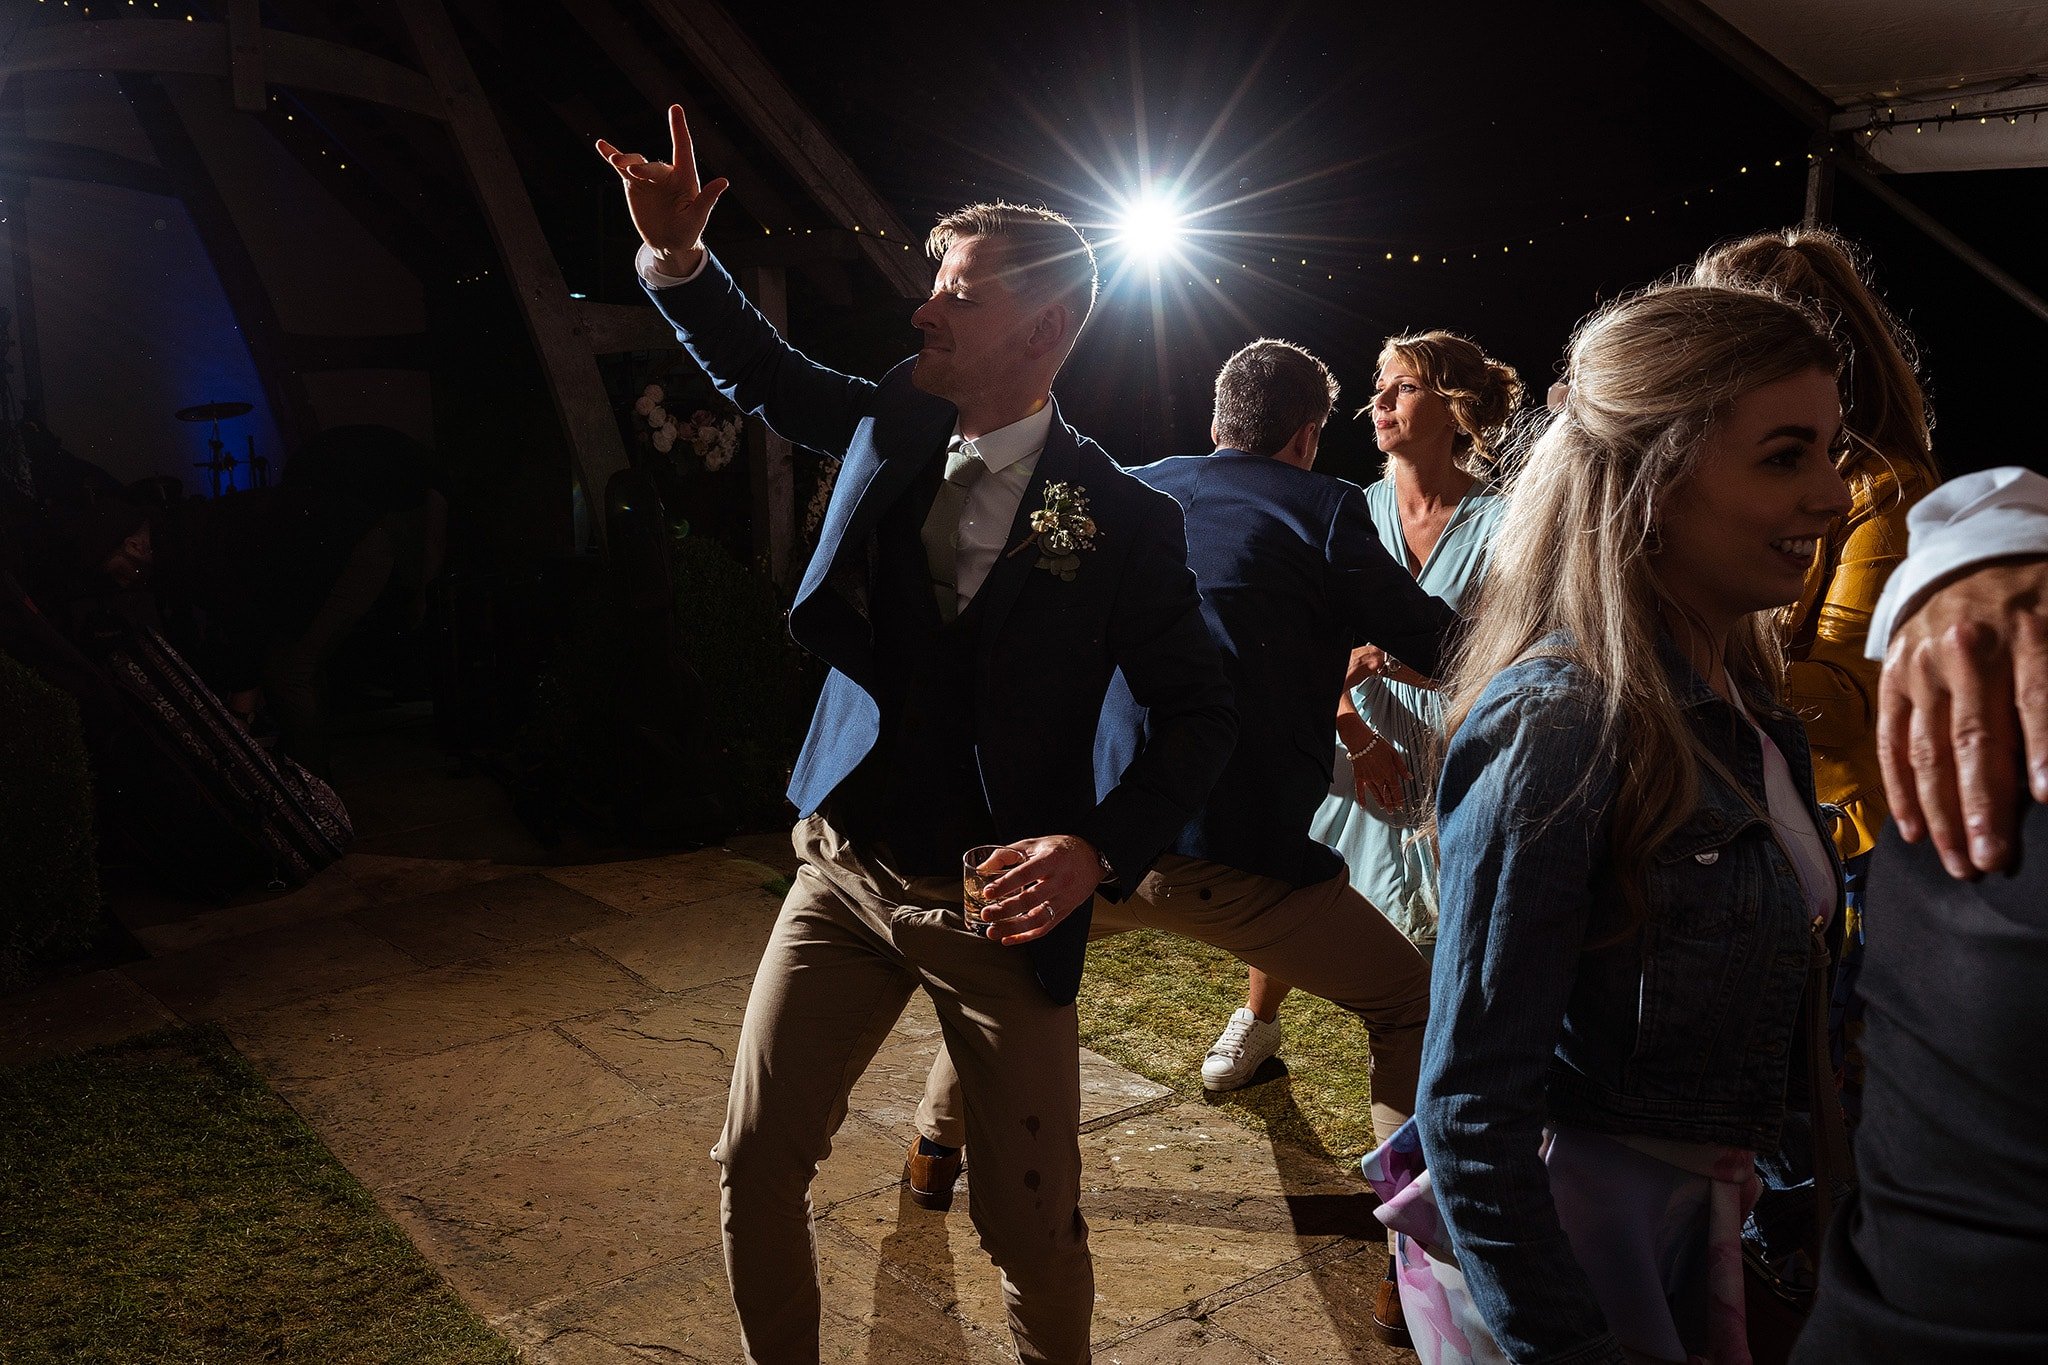 Dancing at Kingscote Barn wedding party